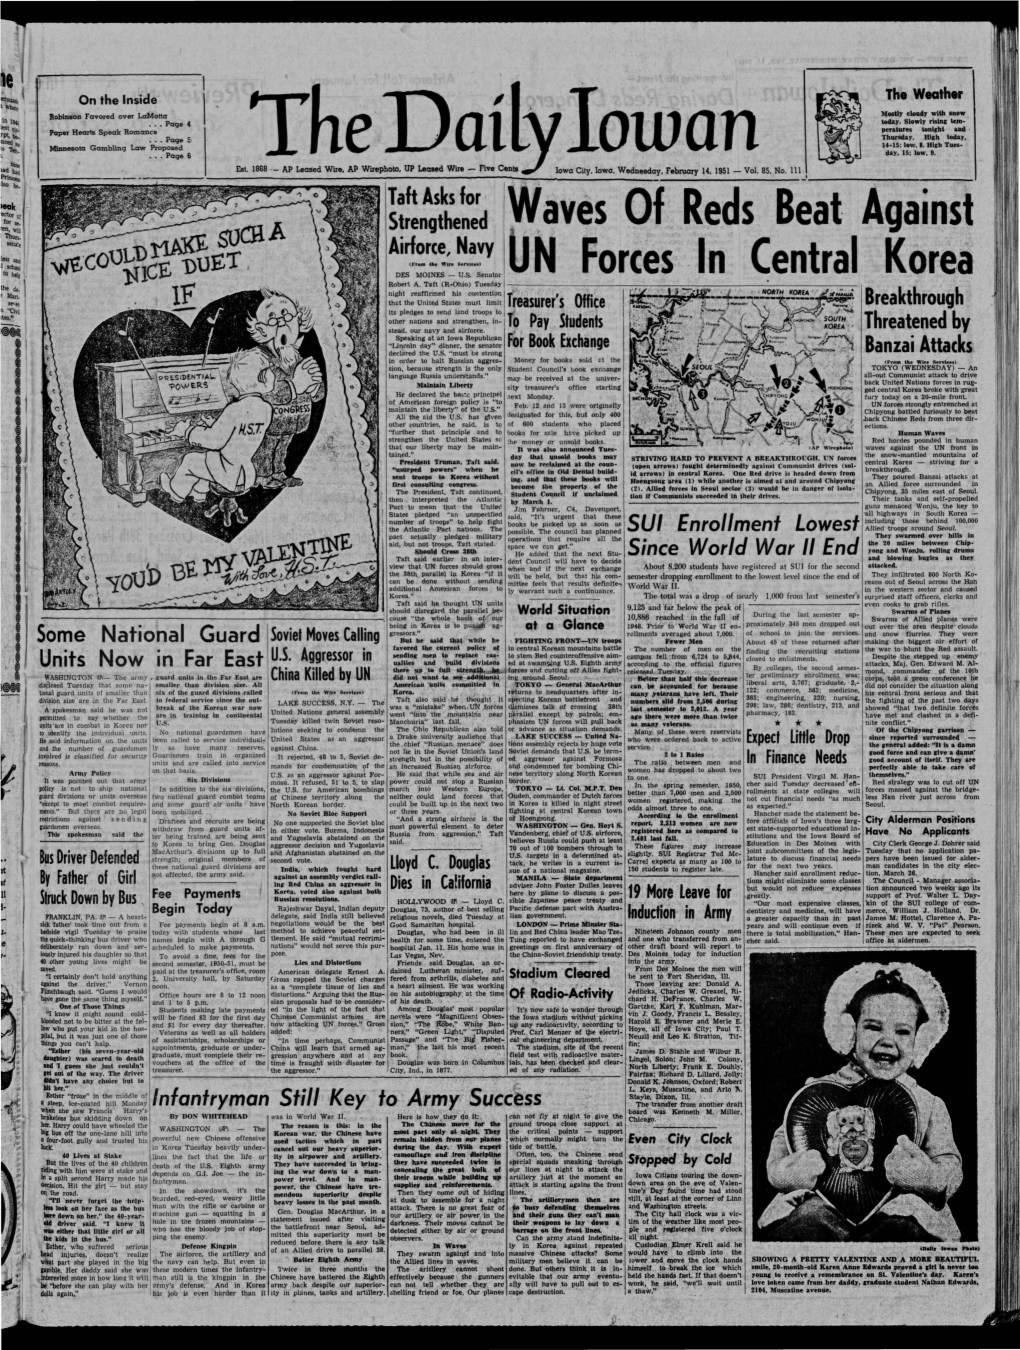 Daily Iowan (Iowa City, Iowa), 1951-02-14